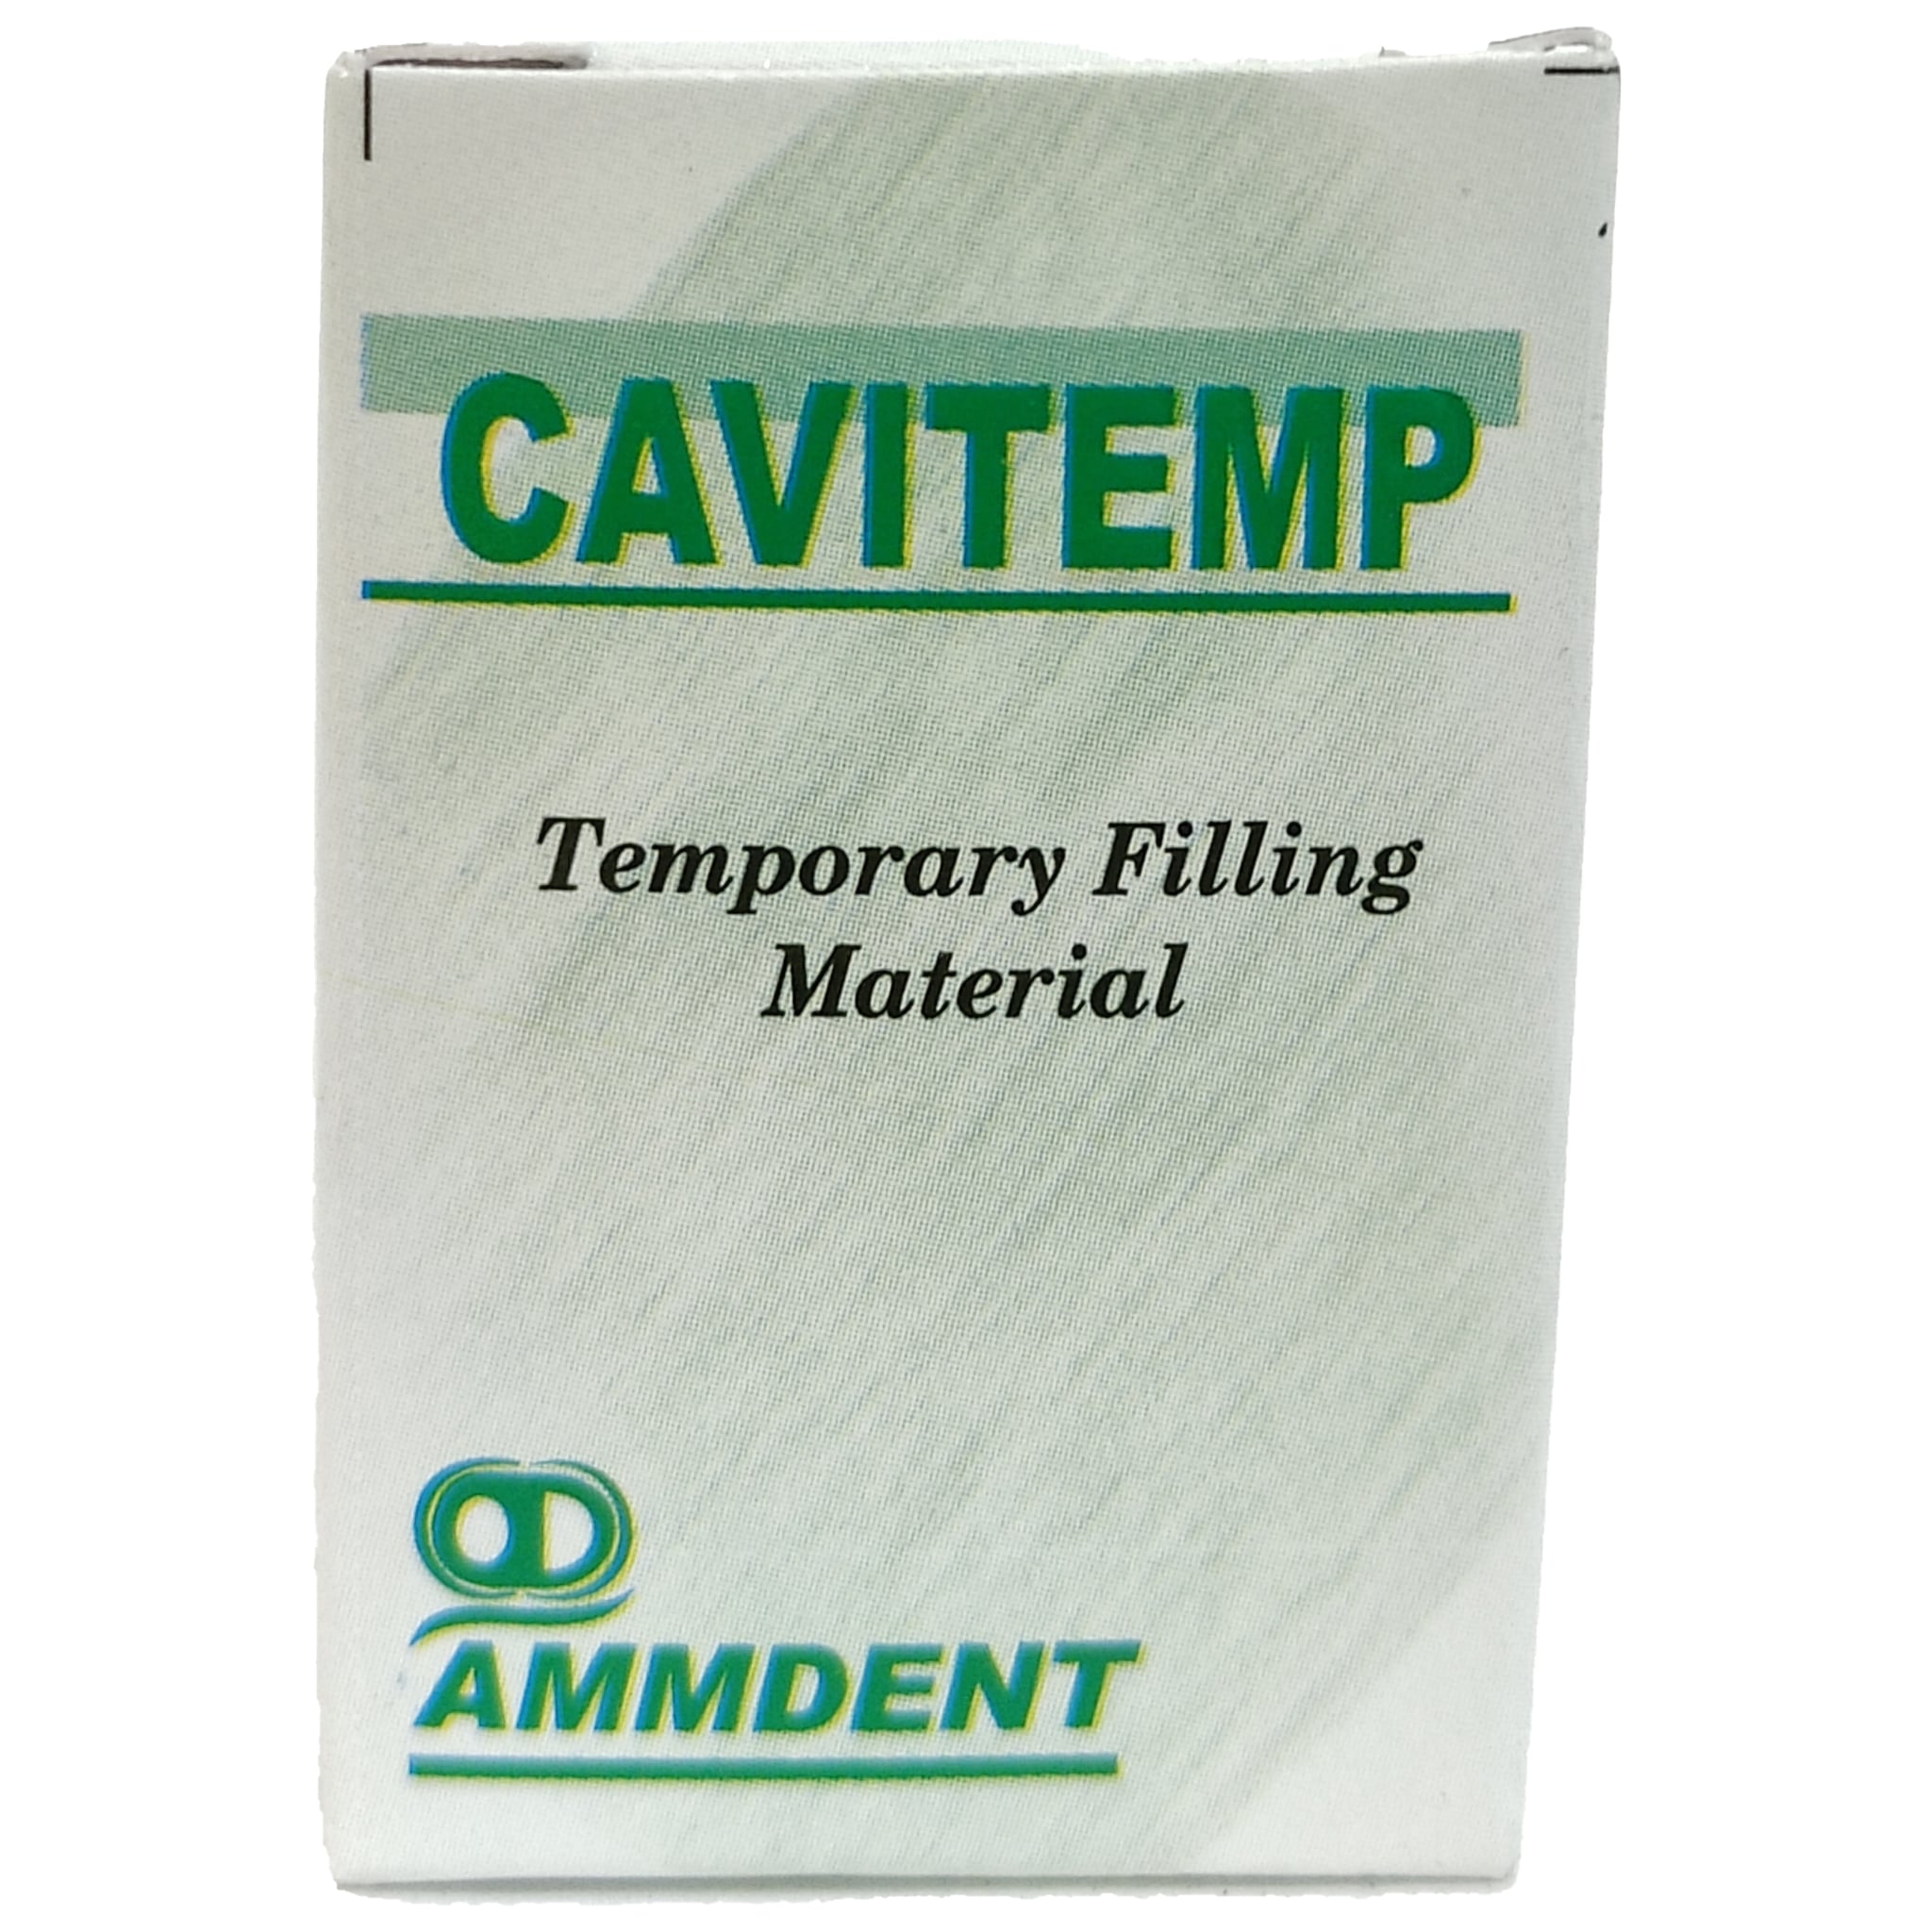 Ammdent Cavitemp Temporary Filling Material